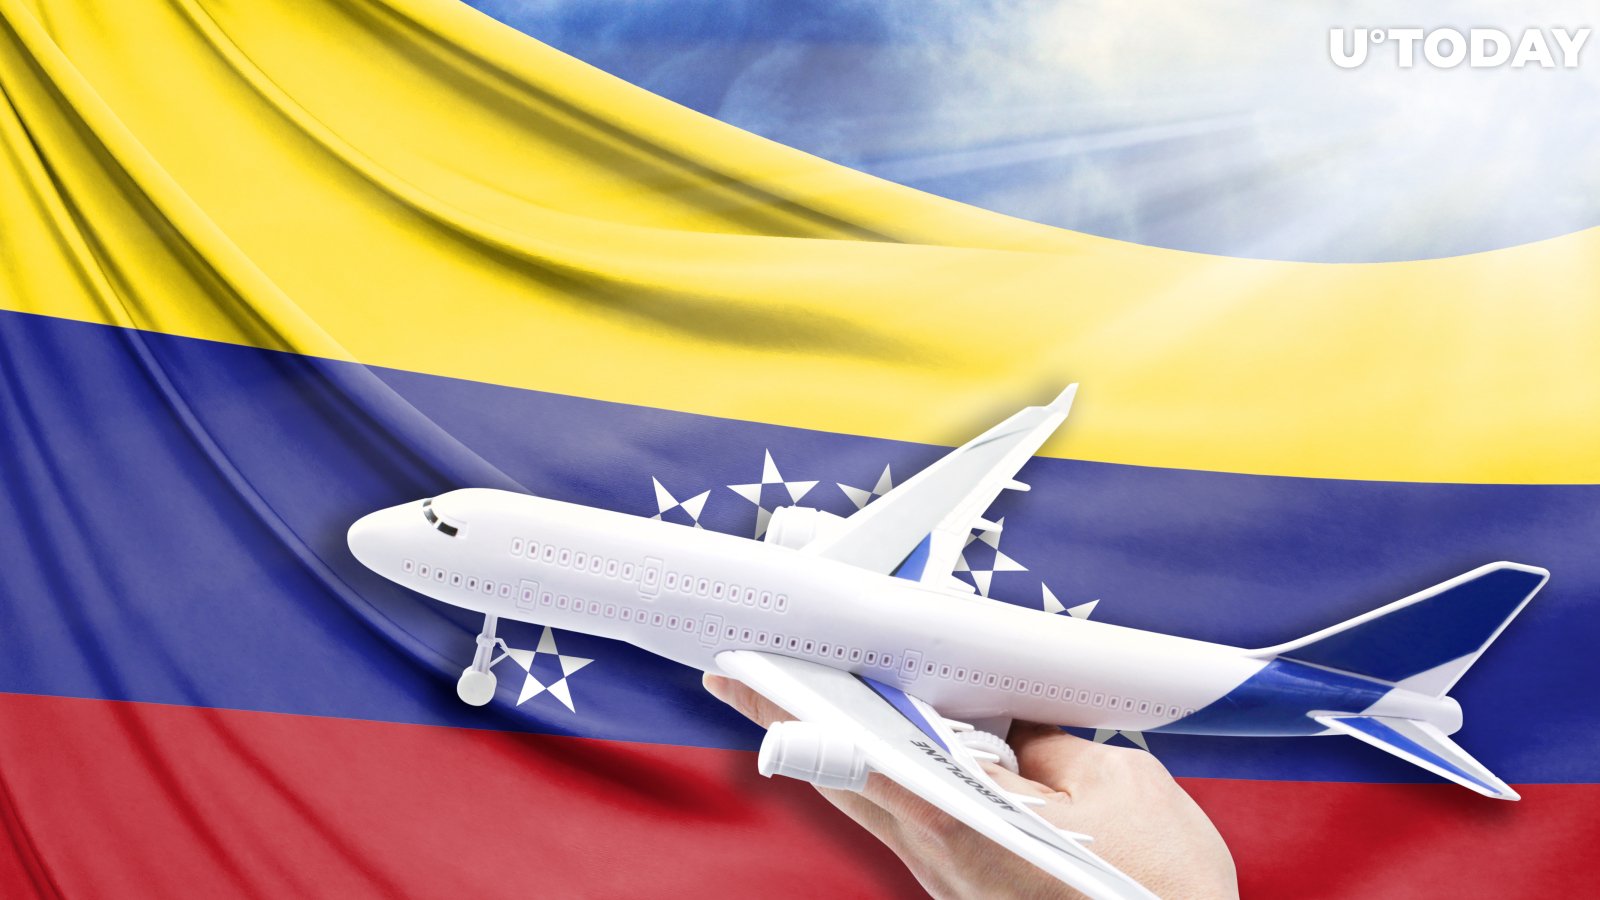 Caracas Air Adopts Bitcoin as New Payment Method  